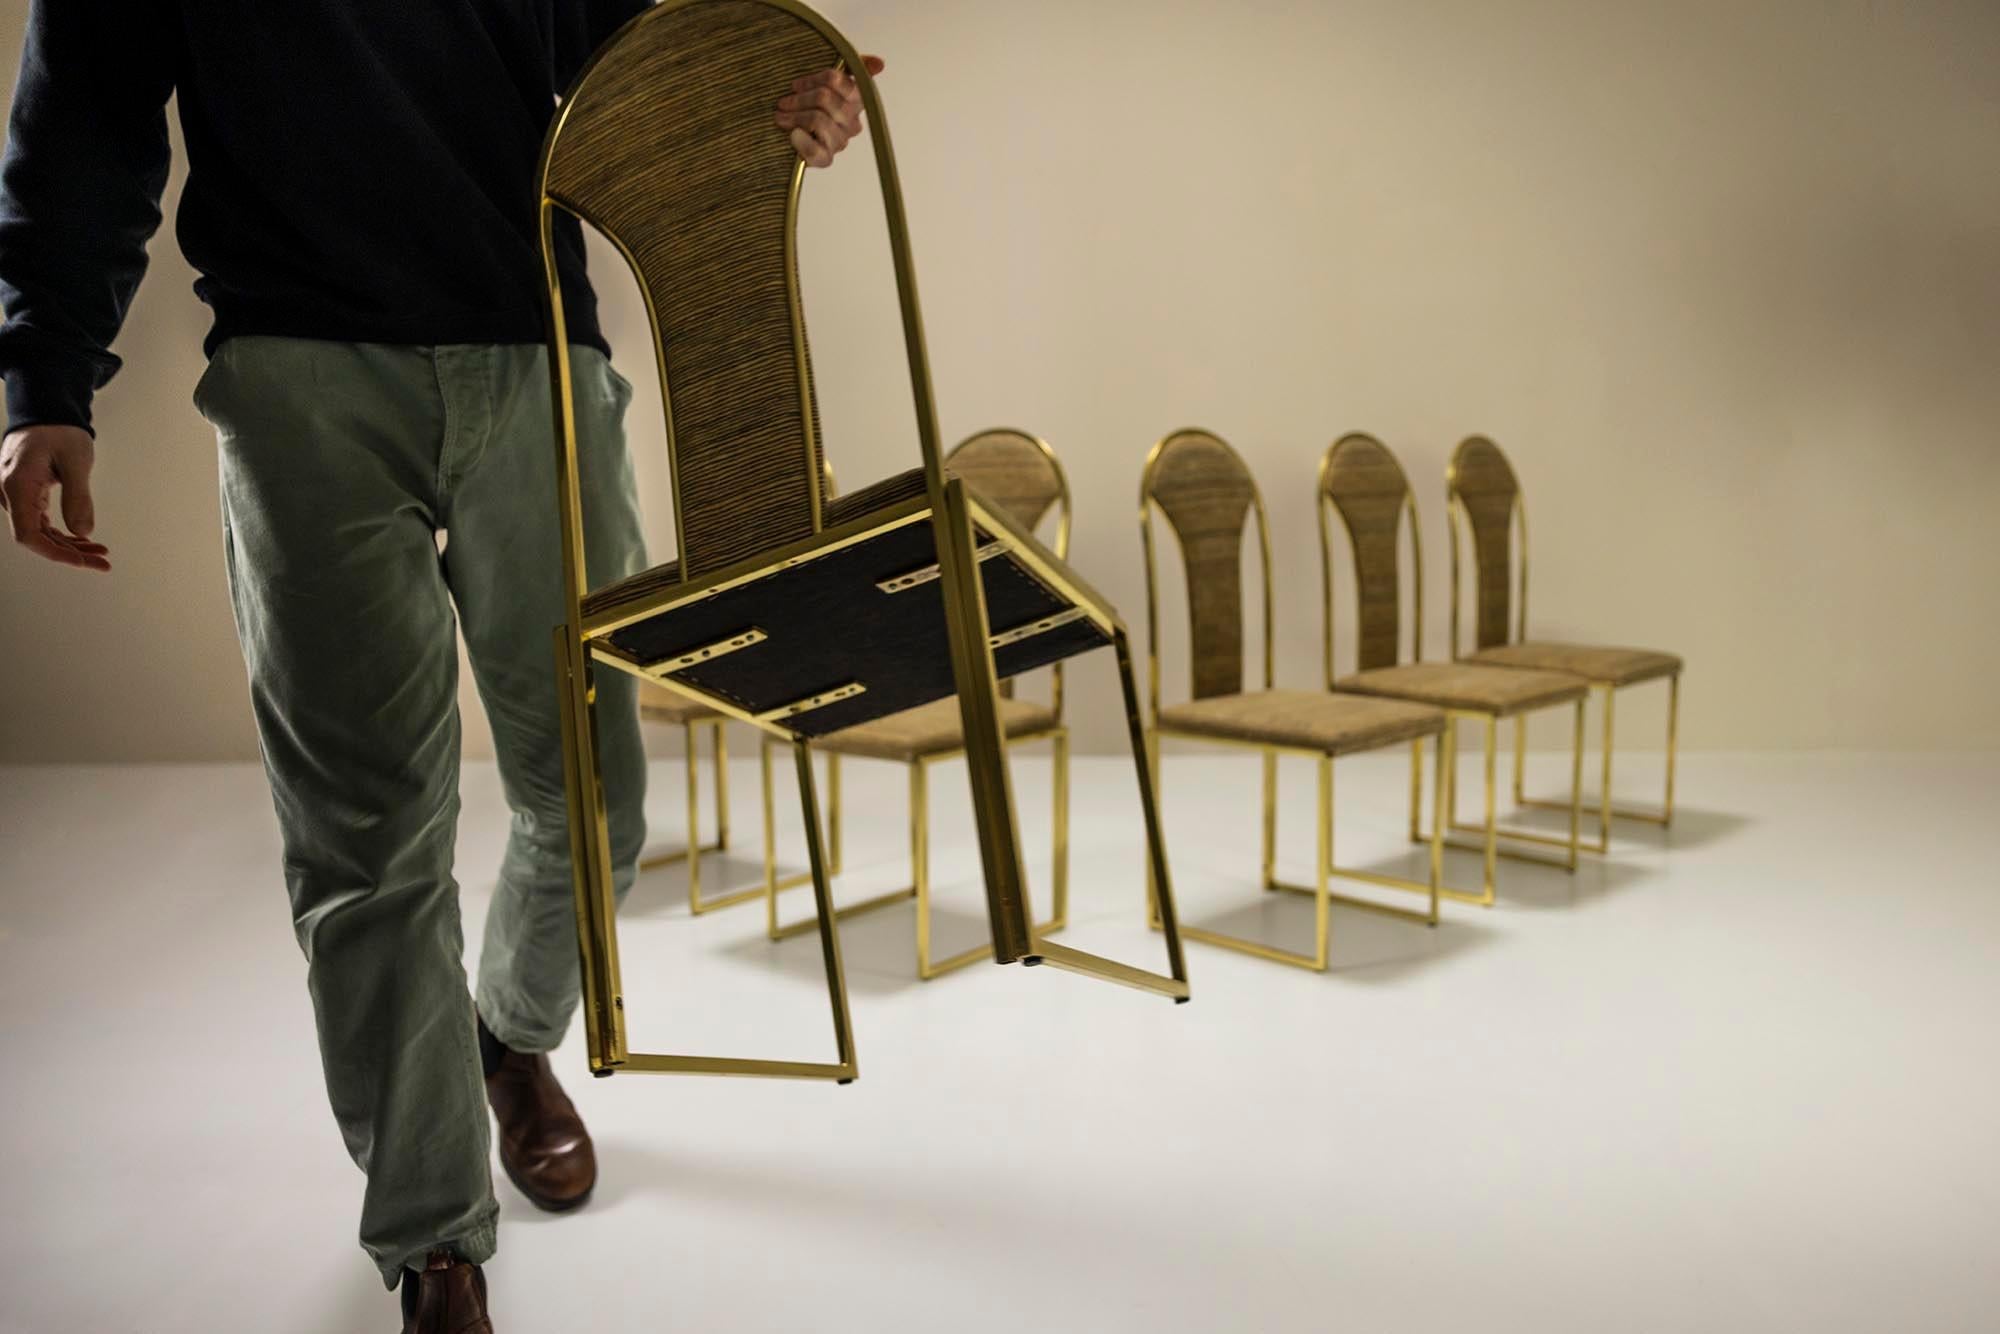 Un ensemble de six chaises de salle à manger fabriquées dans les années 1970 par le fabricant de meubles belge The Furniture Rooms. Ces chaises ont un aspect distingué et s'inscrivent parfaitement dans le genre Hollywood Regency avec leur aspect